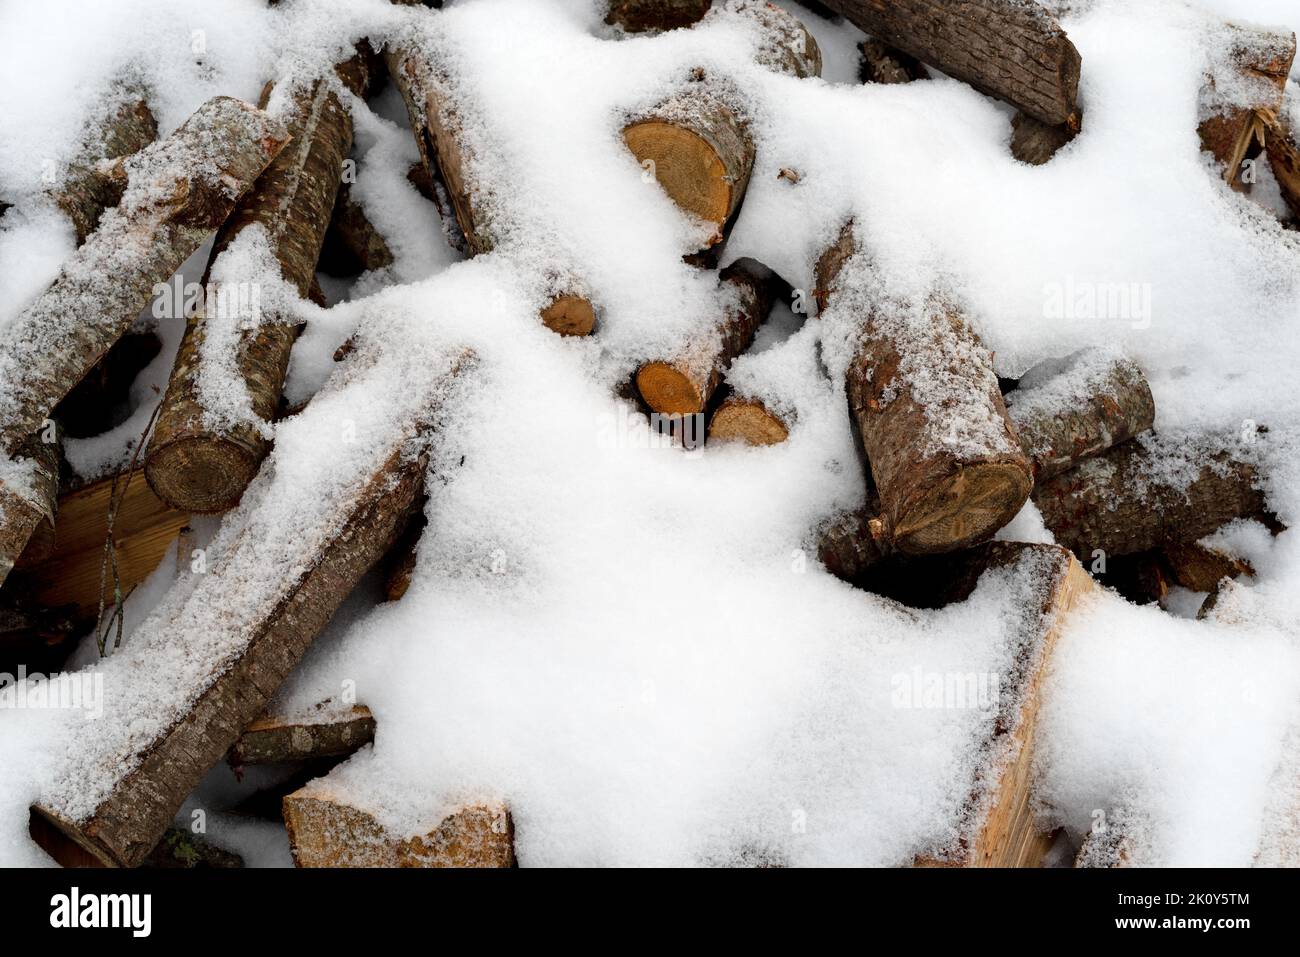 Cortar troncos para leña en los elementos cubiertos de nieve mientras se secan durante los meses de invierno. Foto de stock